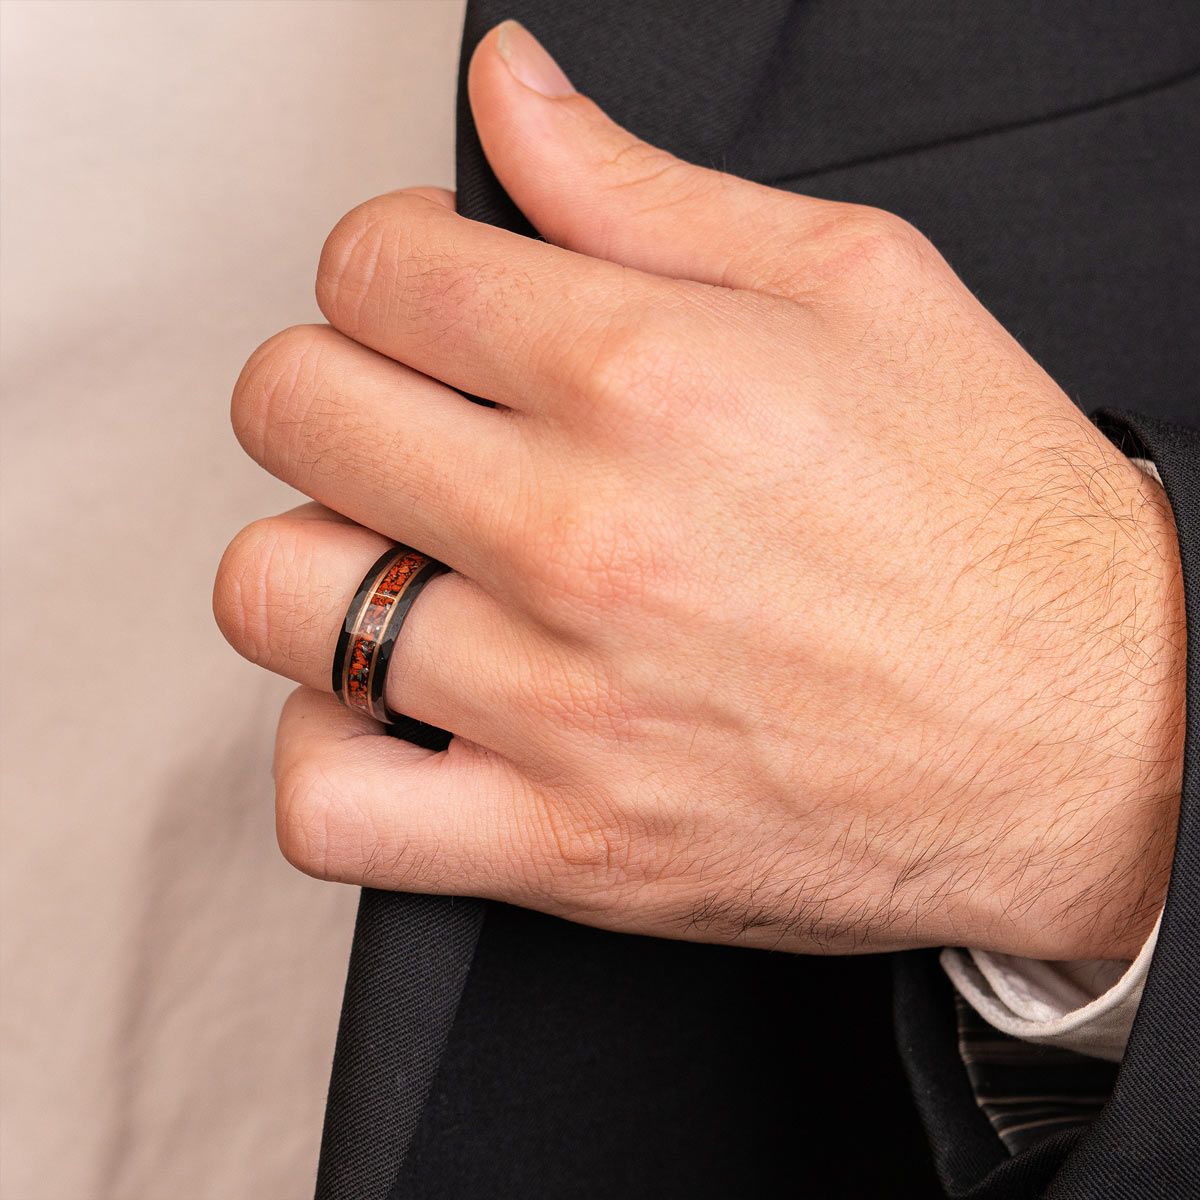 Man wearing unique tungsten ring